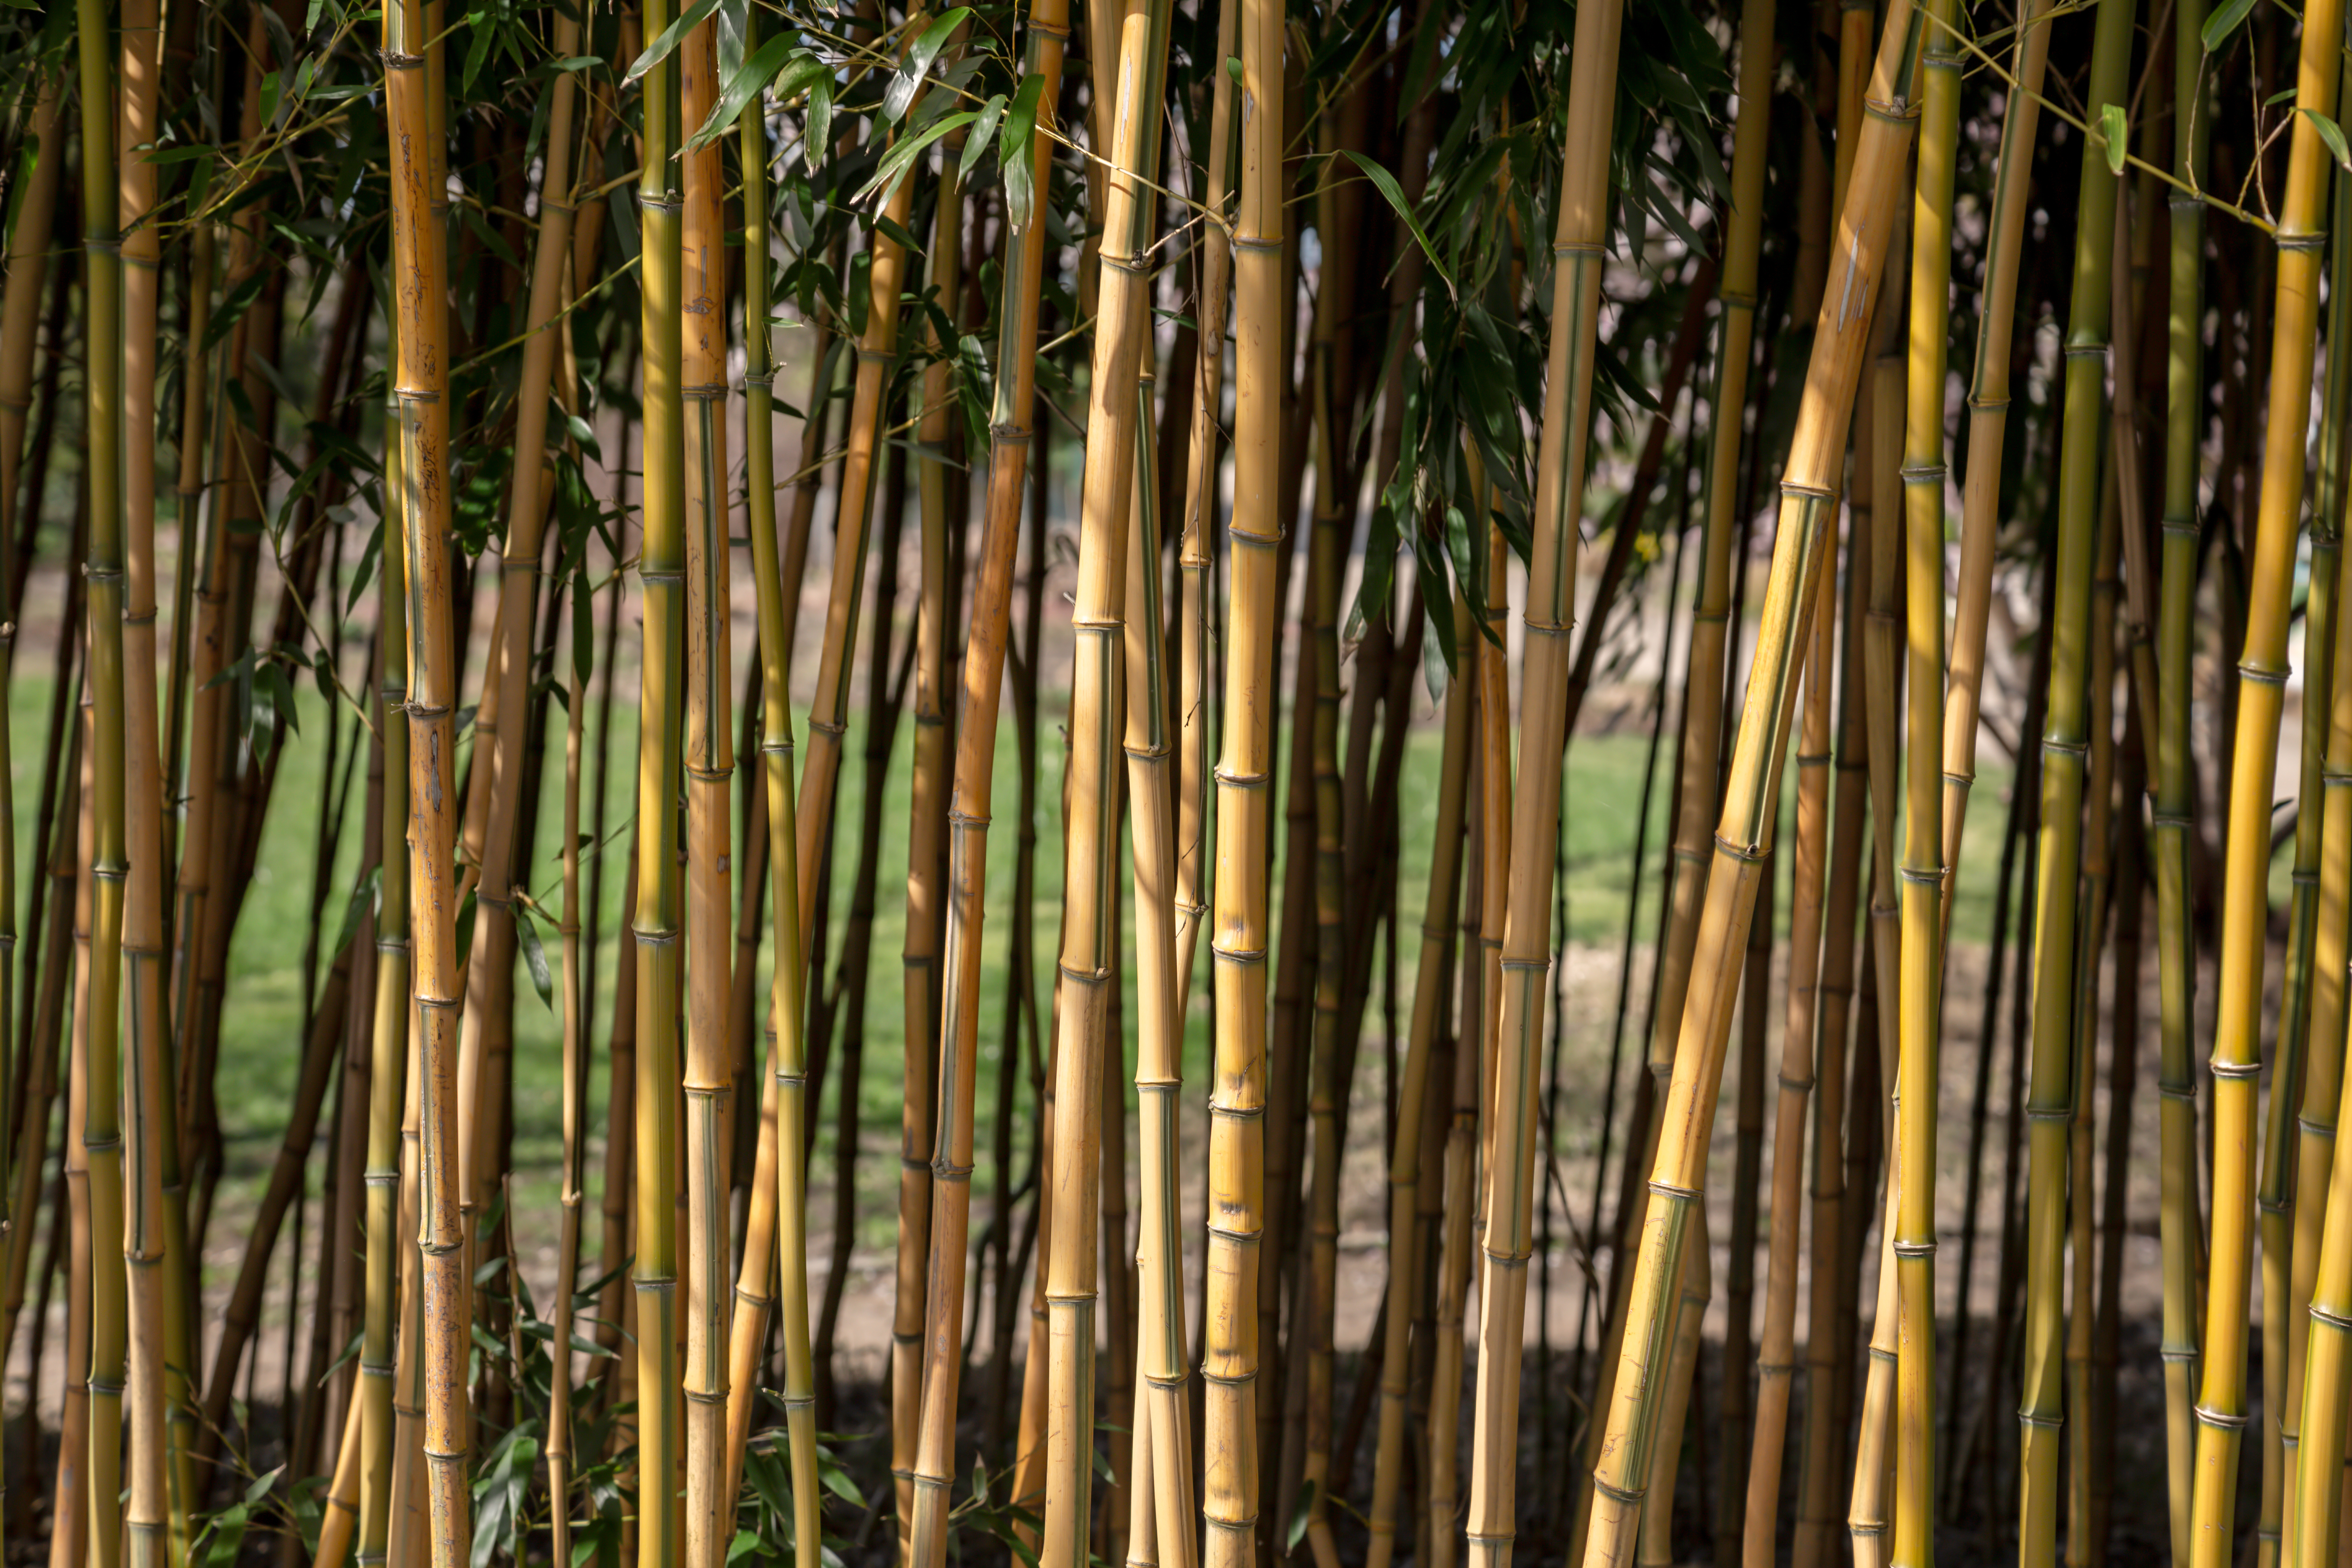 Bambus kann zum Problem werden, wenn er nicht gepflegt und zurückgeschnitten wird